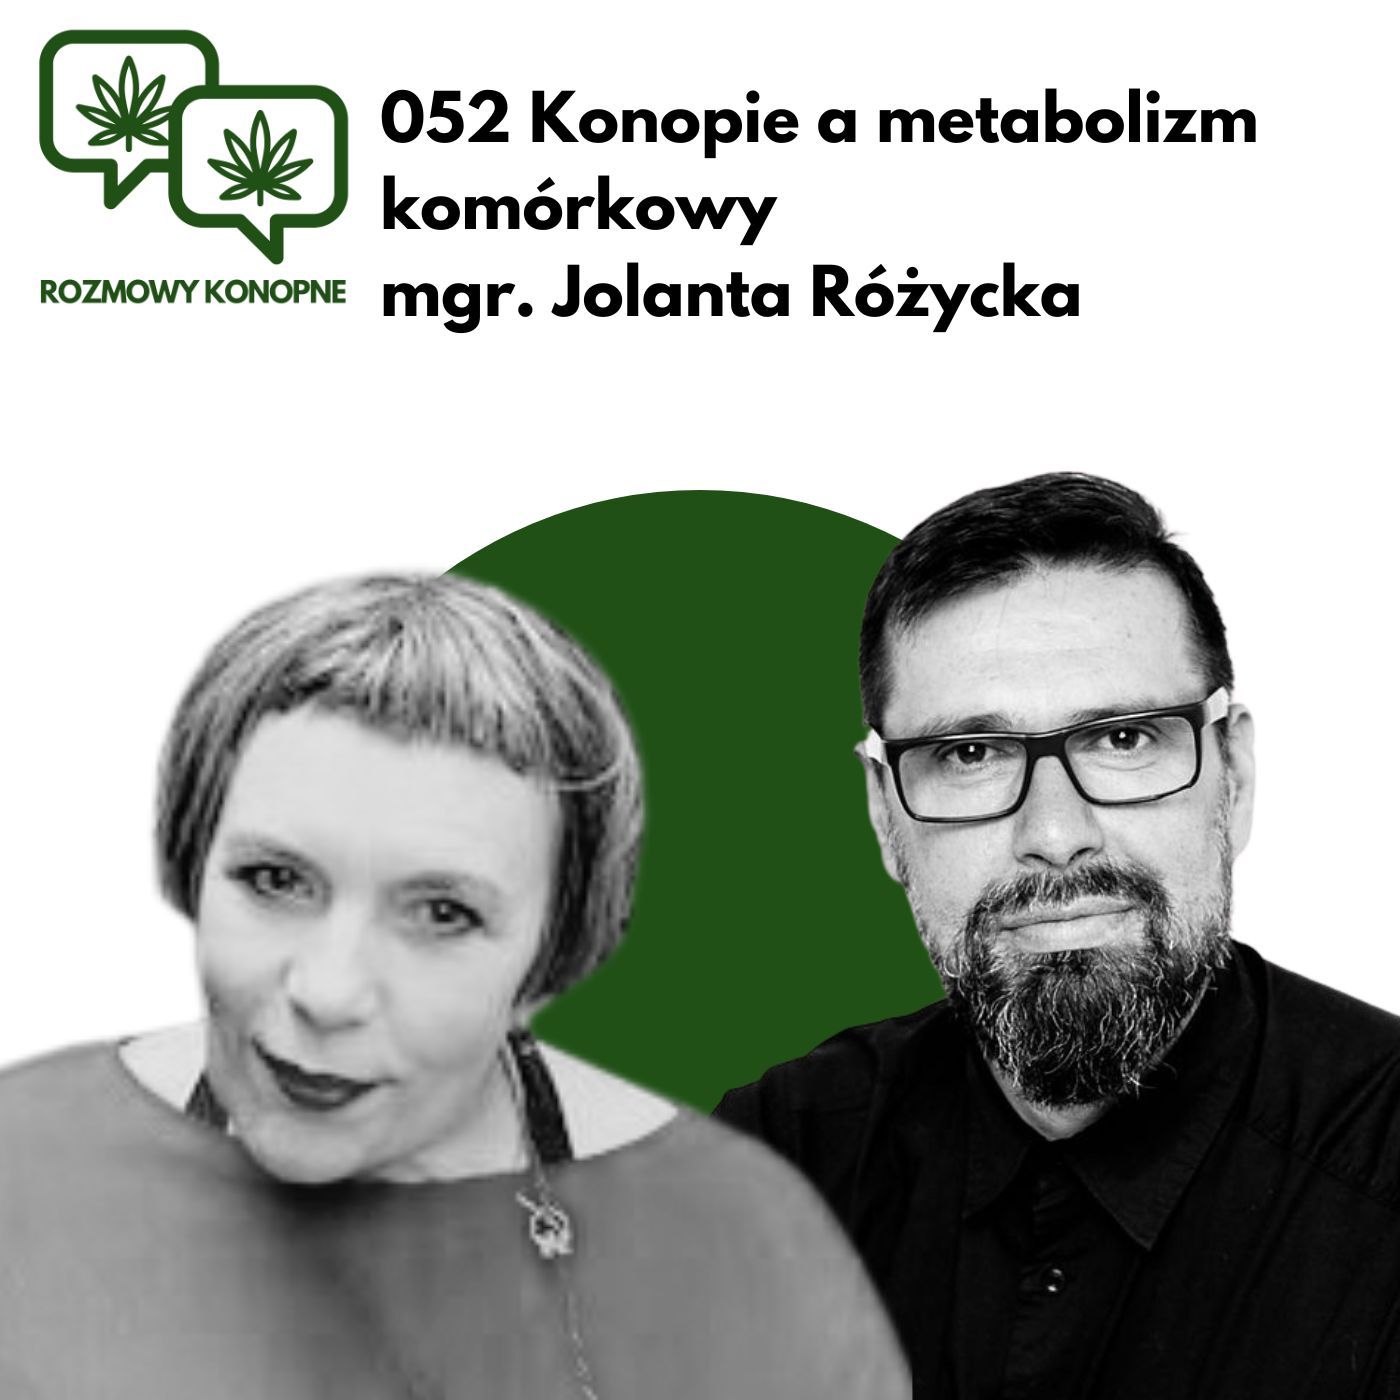 052 - Konopie a metabolizm komórkowy mgr. Jolanta Różycka